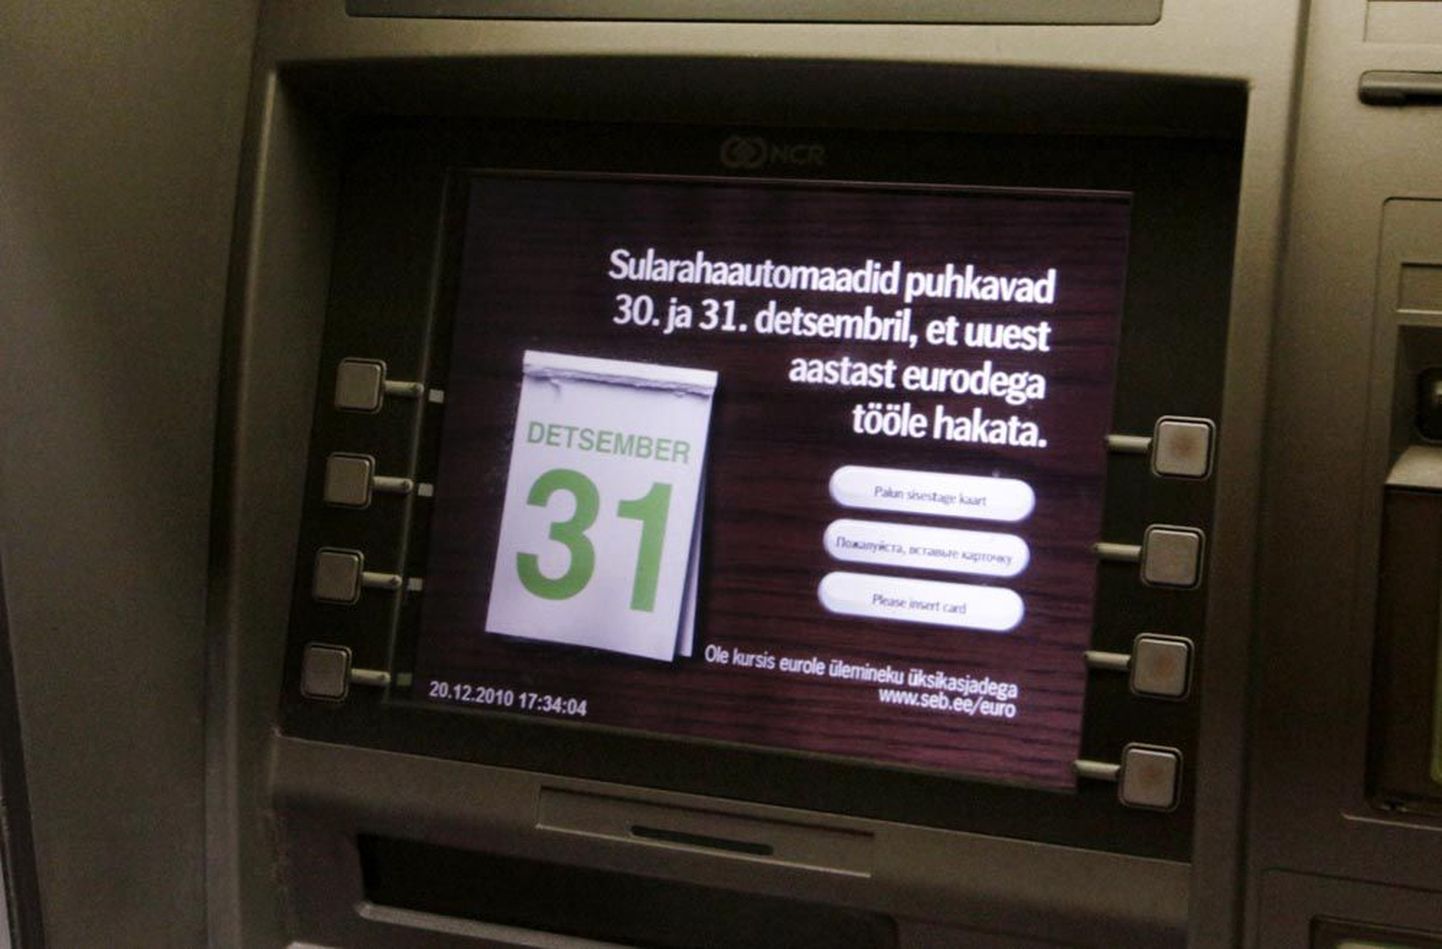 SEB sularahaautomaadid hoiatavad, et 30. ja 31. detsembril sealt raha välja võtta ei saa.